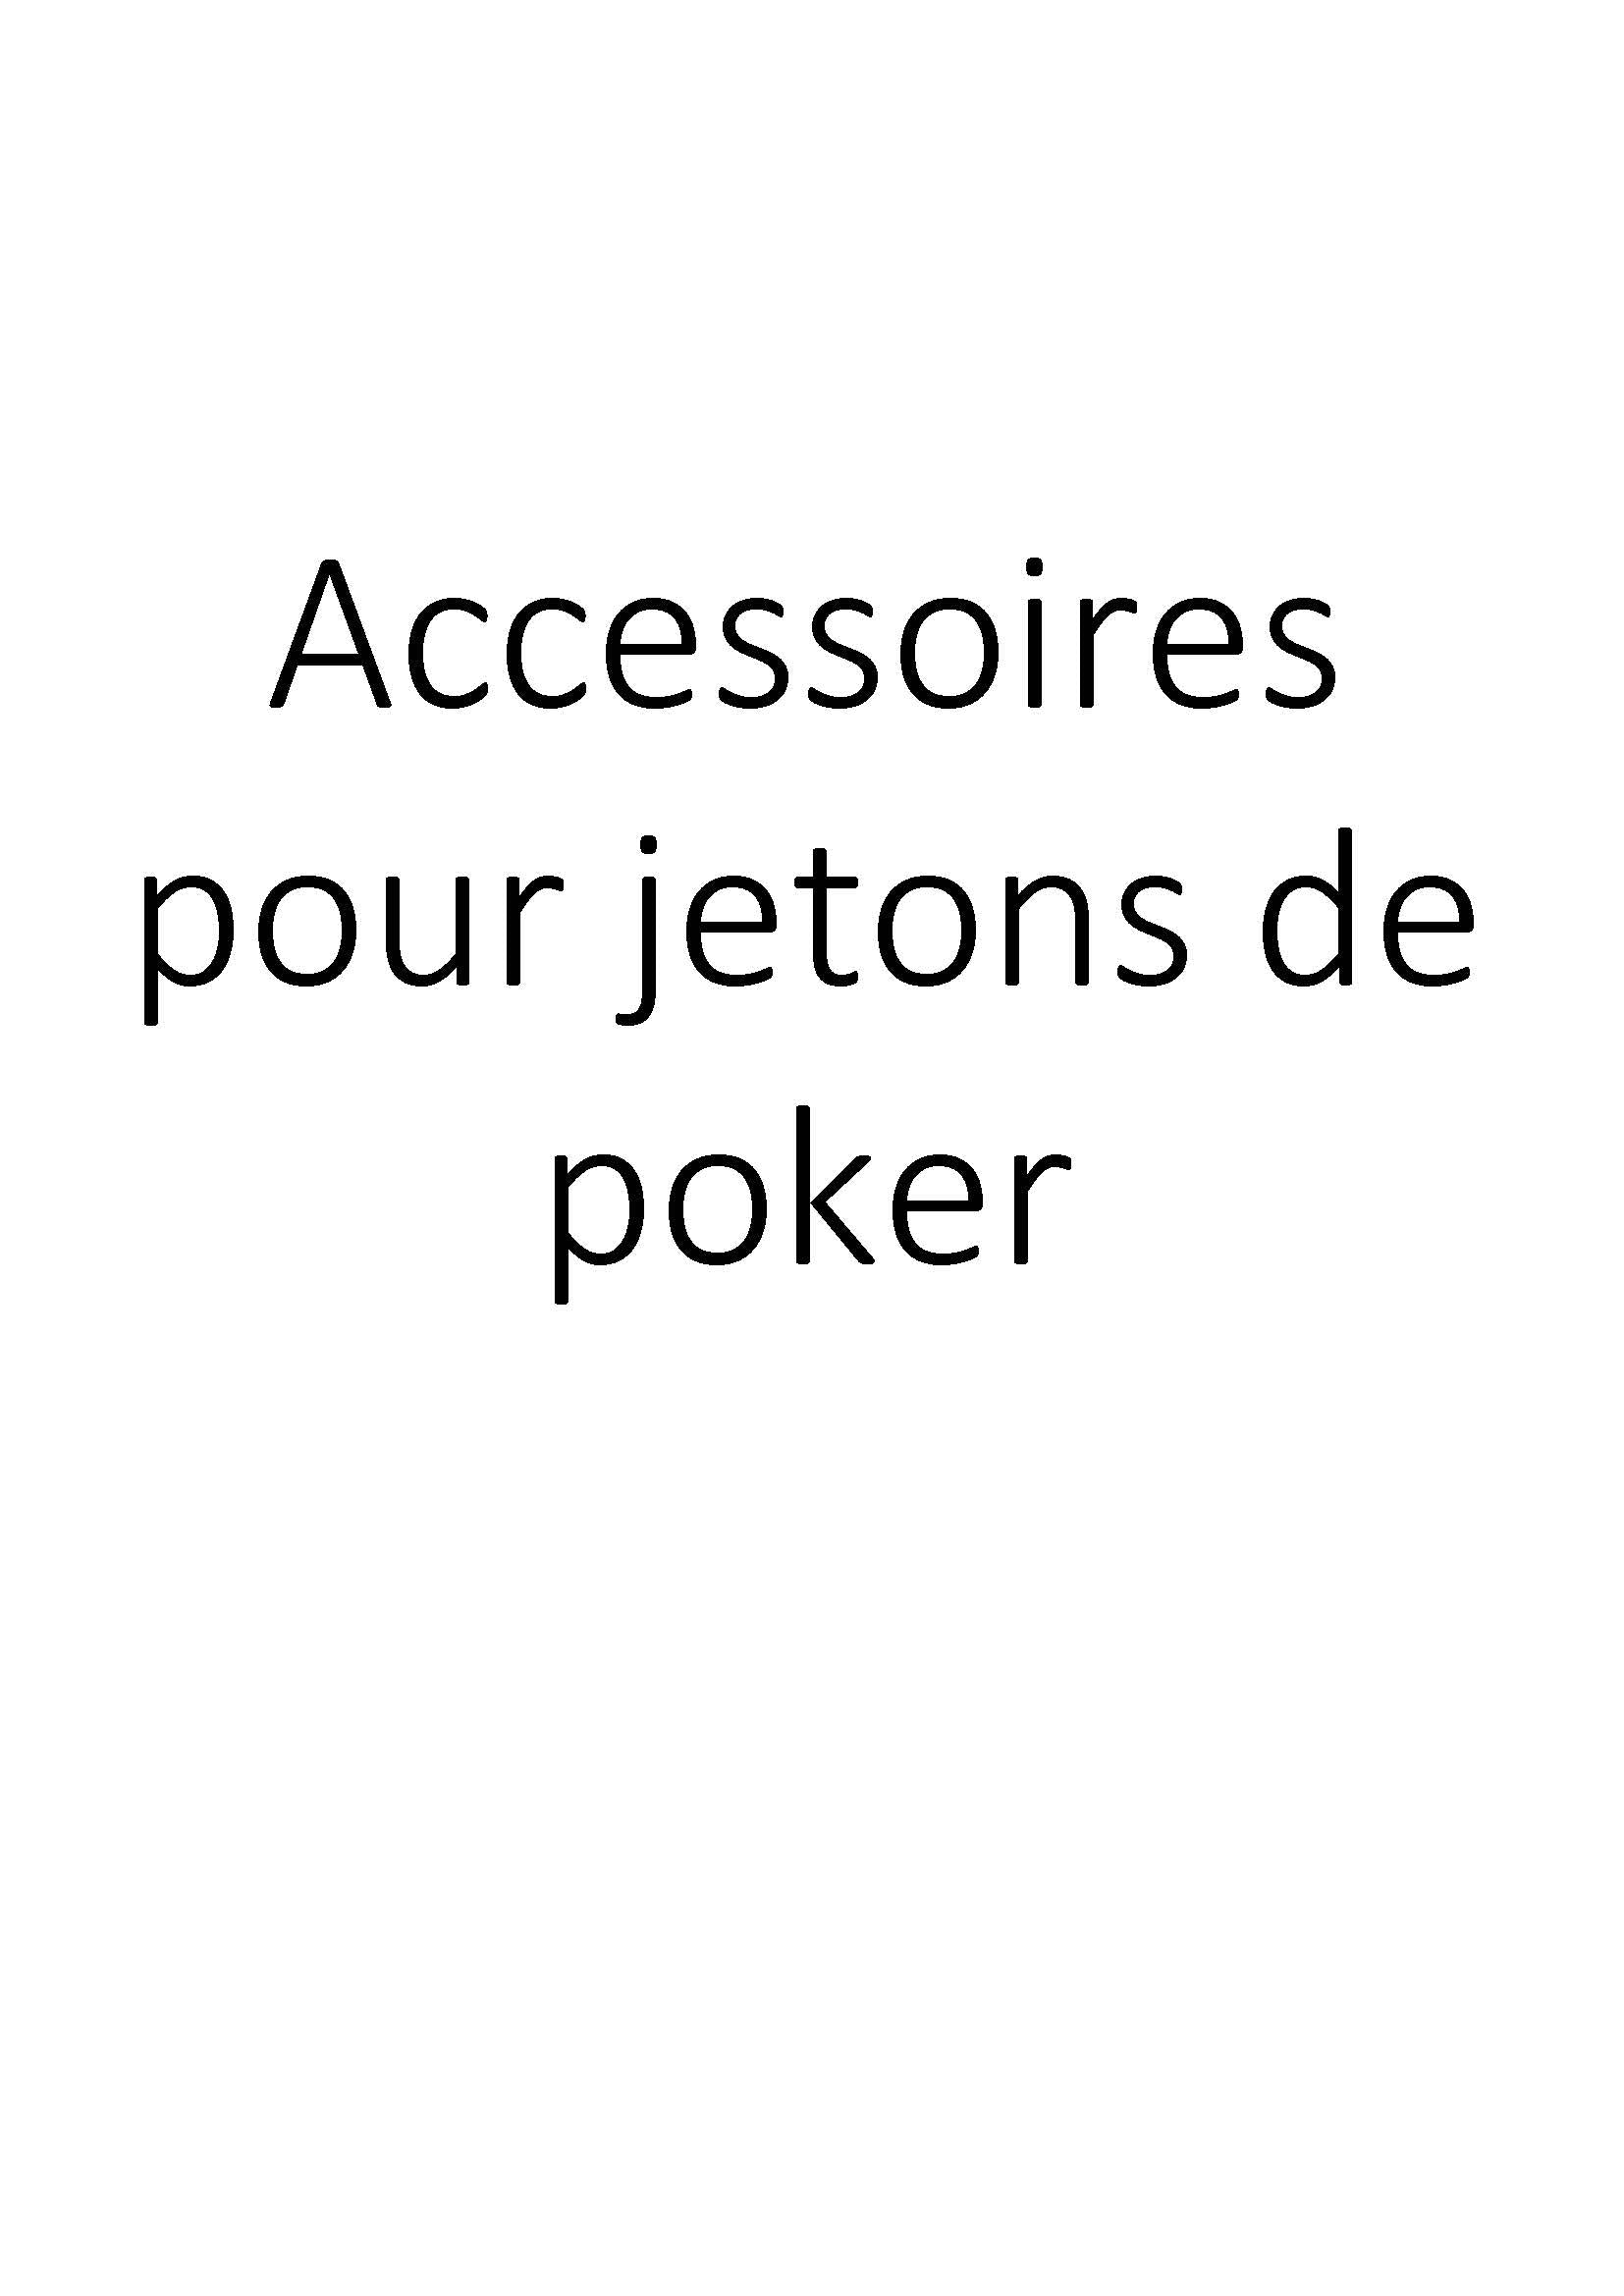 Accessoires pour jetons de poker clicktofournisseur.com